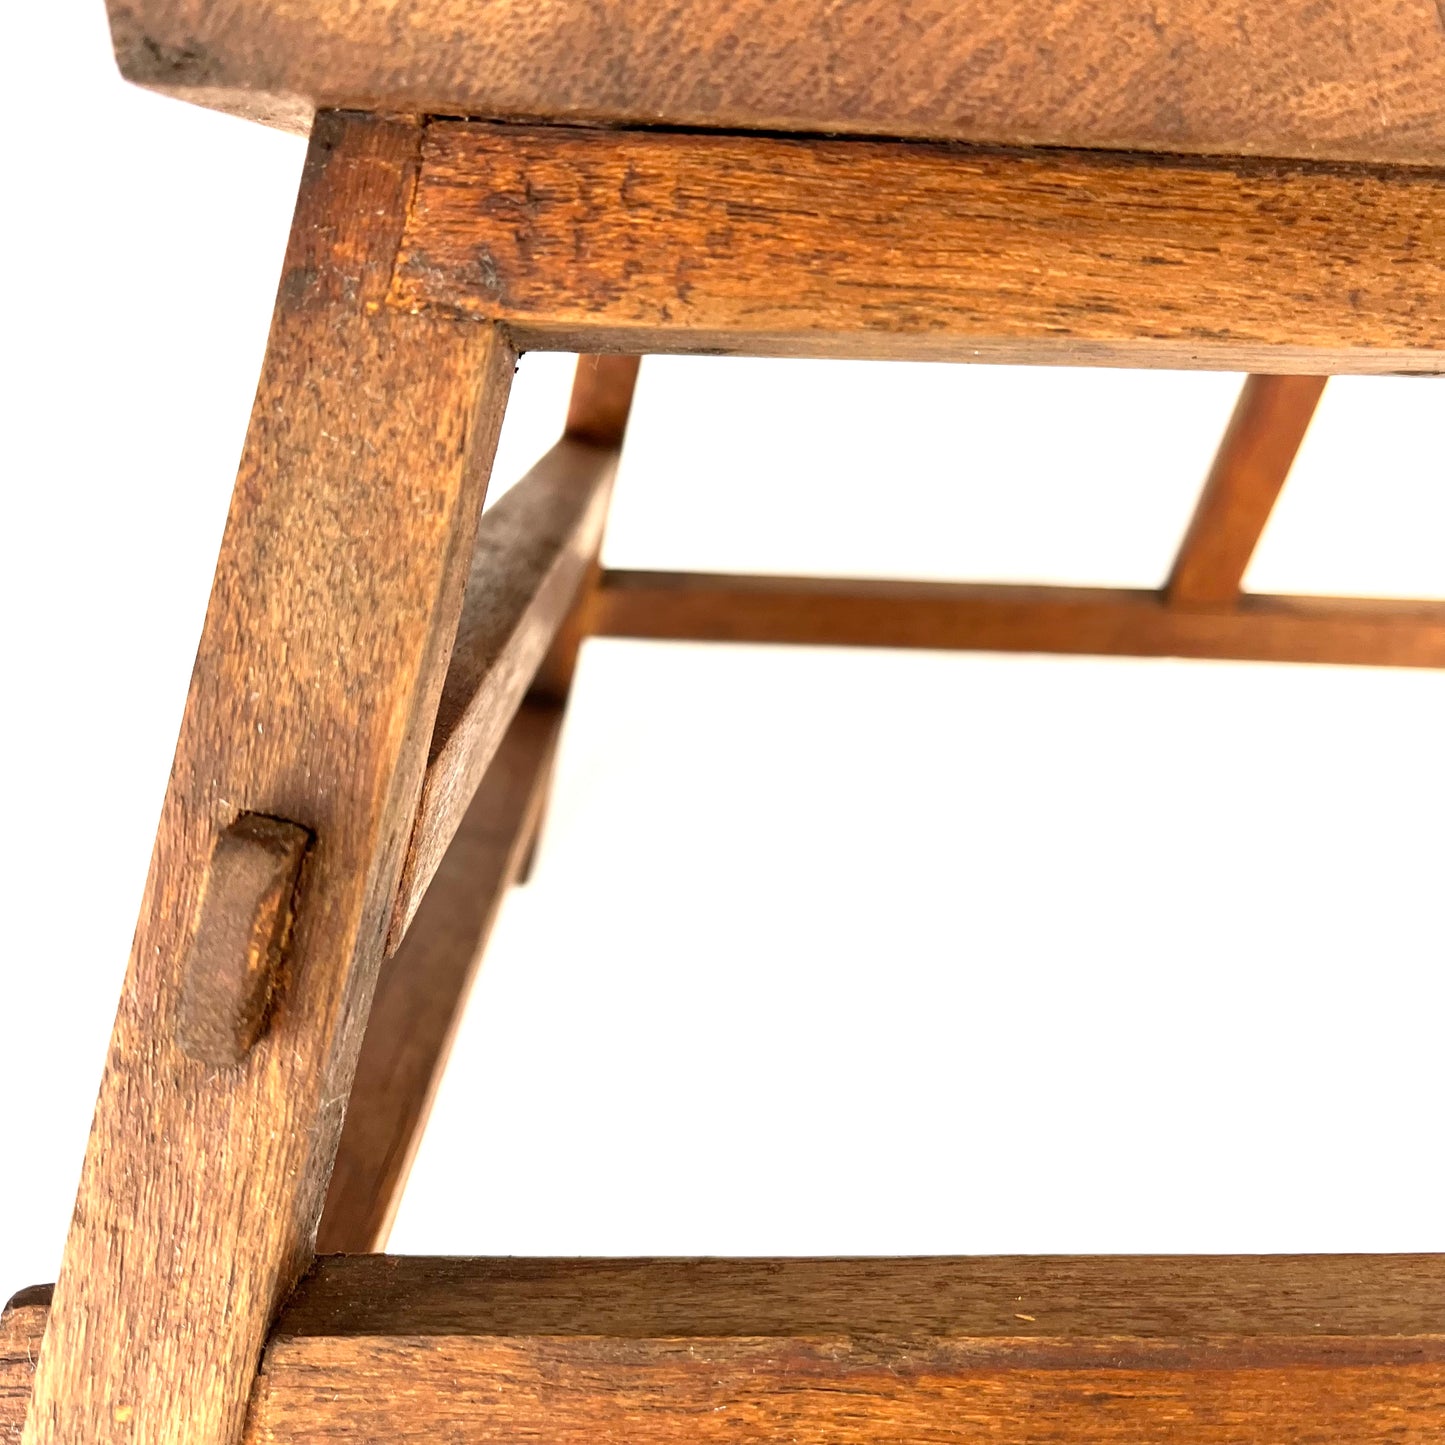 Antique Japanese Taisho Era c1920's Step-stool Mortis & Tenon Joinery